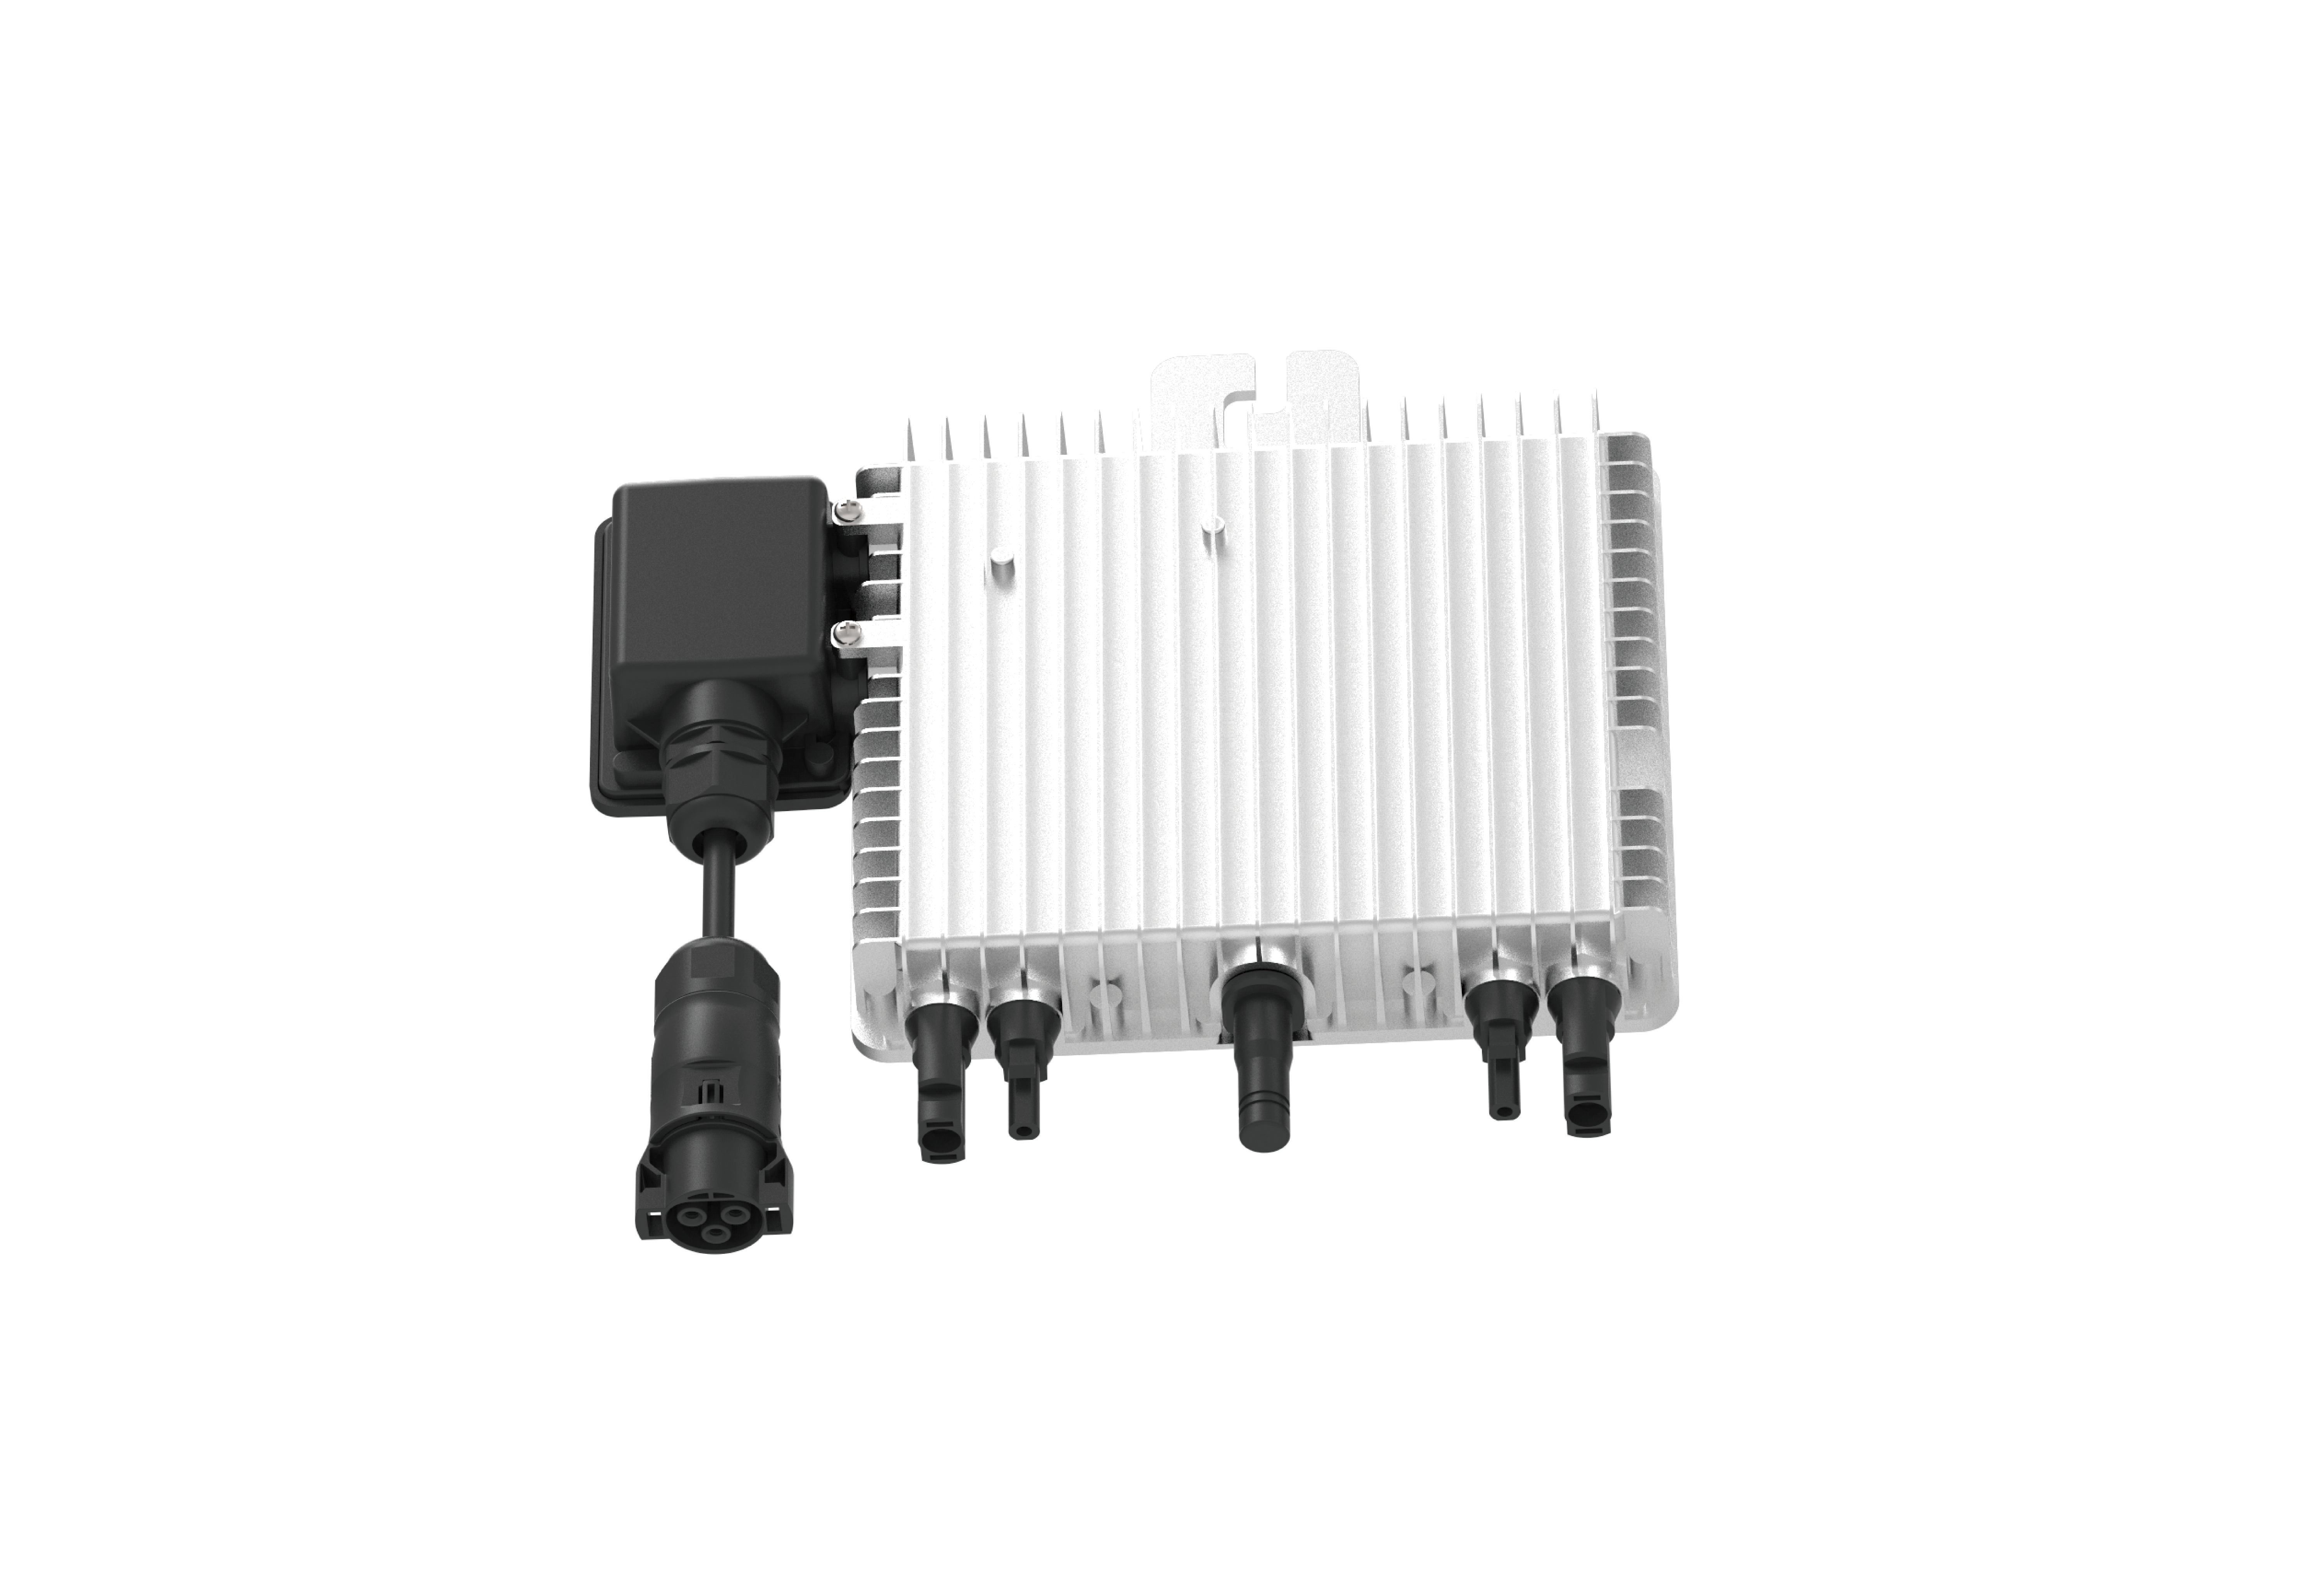 Deye SUN-M80-RED600W - 600W Micro-Wechselrichter mit WLAN (VDE Konfor